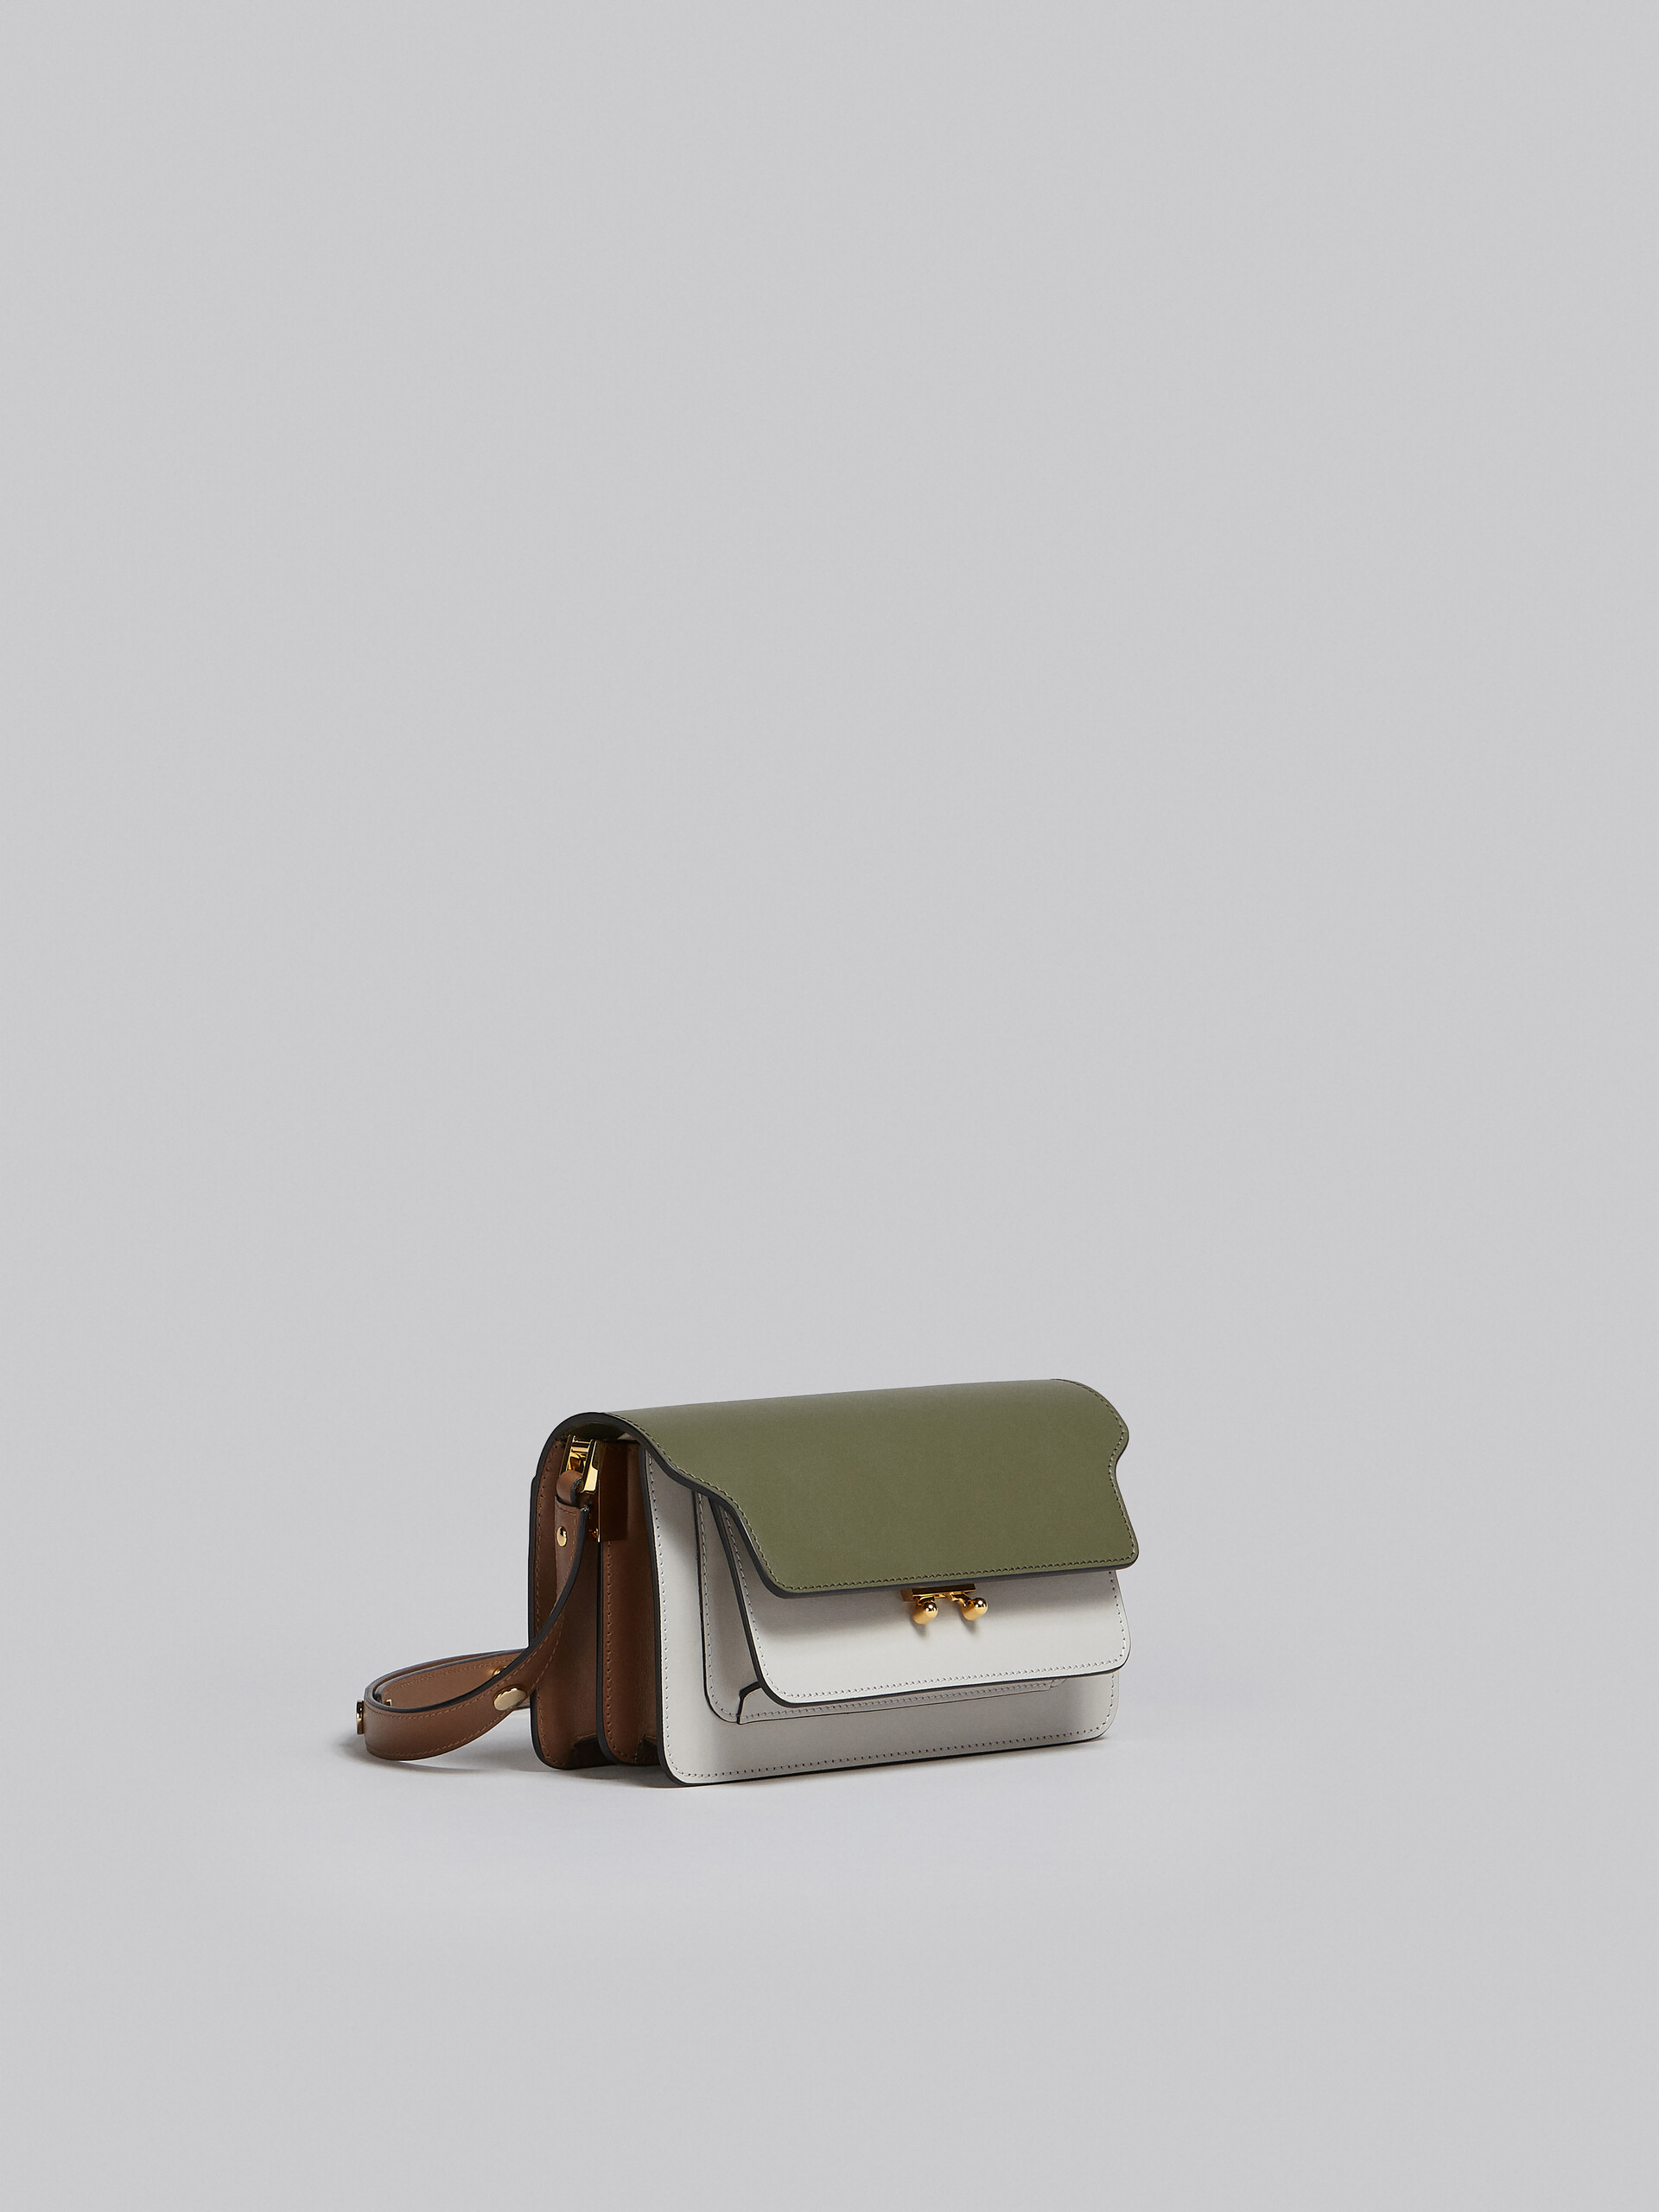 Trunk Bag E/W in pelle verde, grigia e marrone - Borse a spalla - Image 5